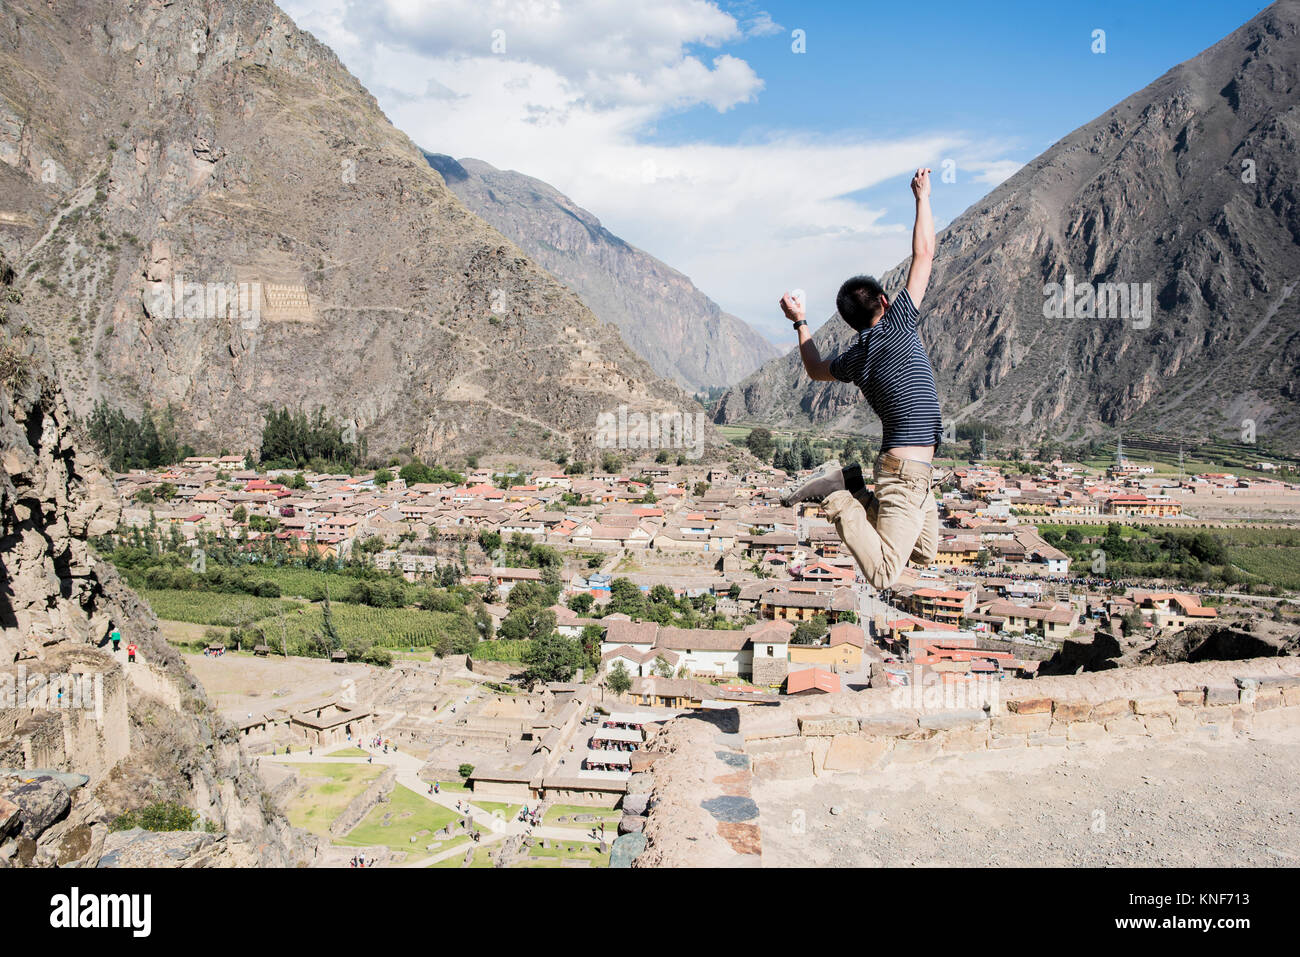 Man Jumping at the top of Ollantaytambo Ruins, Cusco, Peru, South America Stock Photo